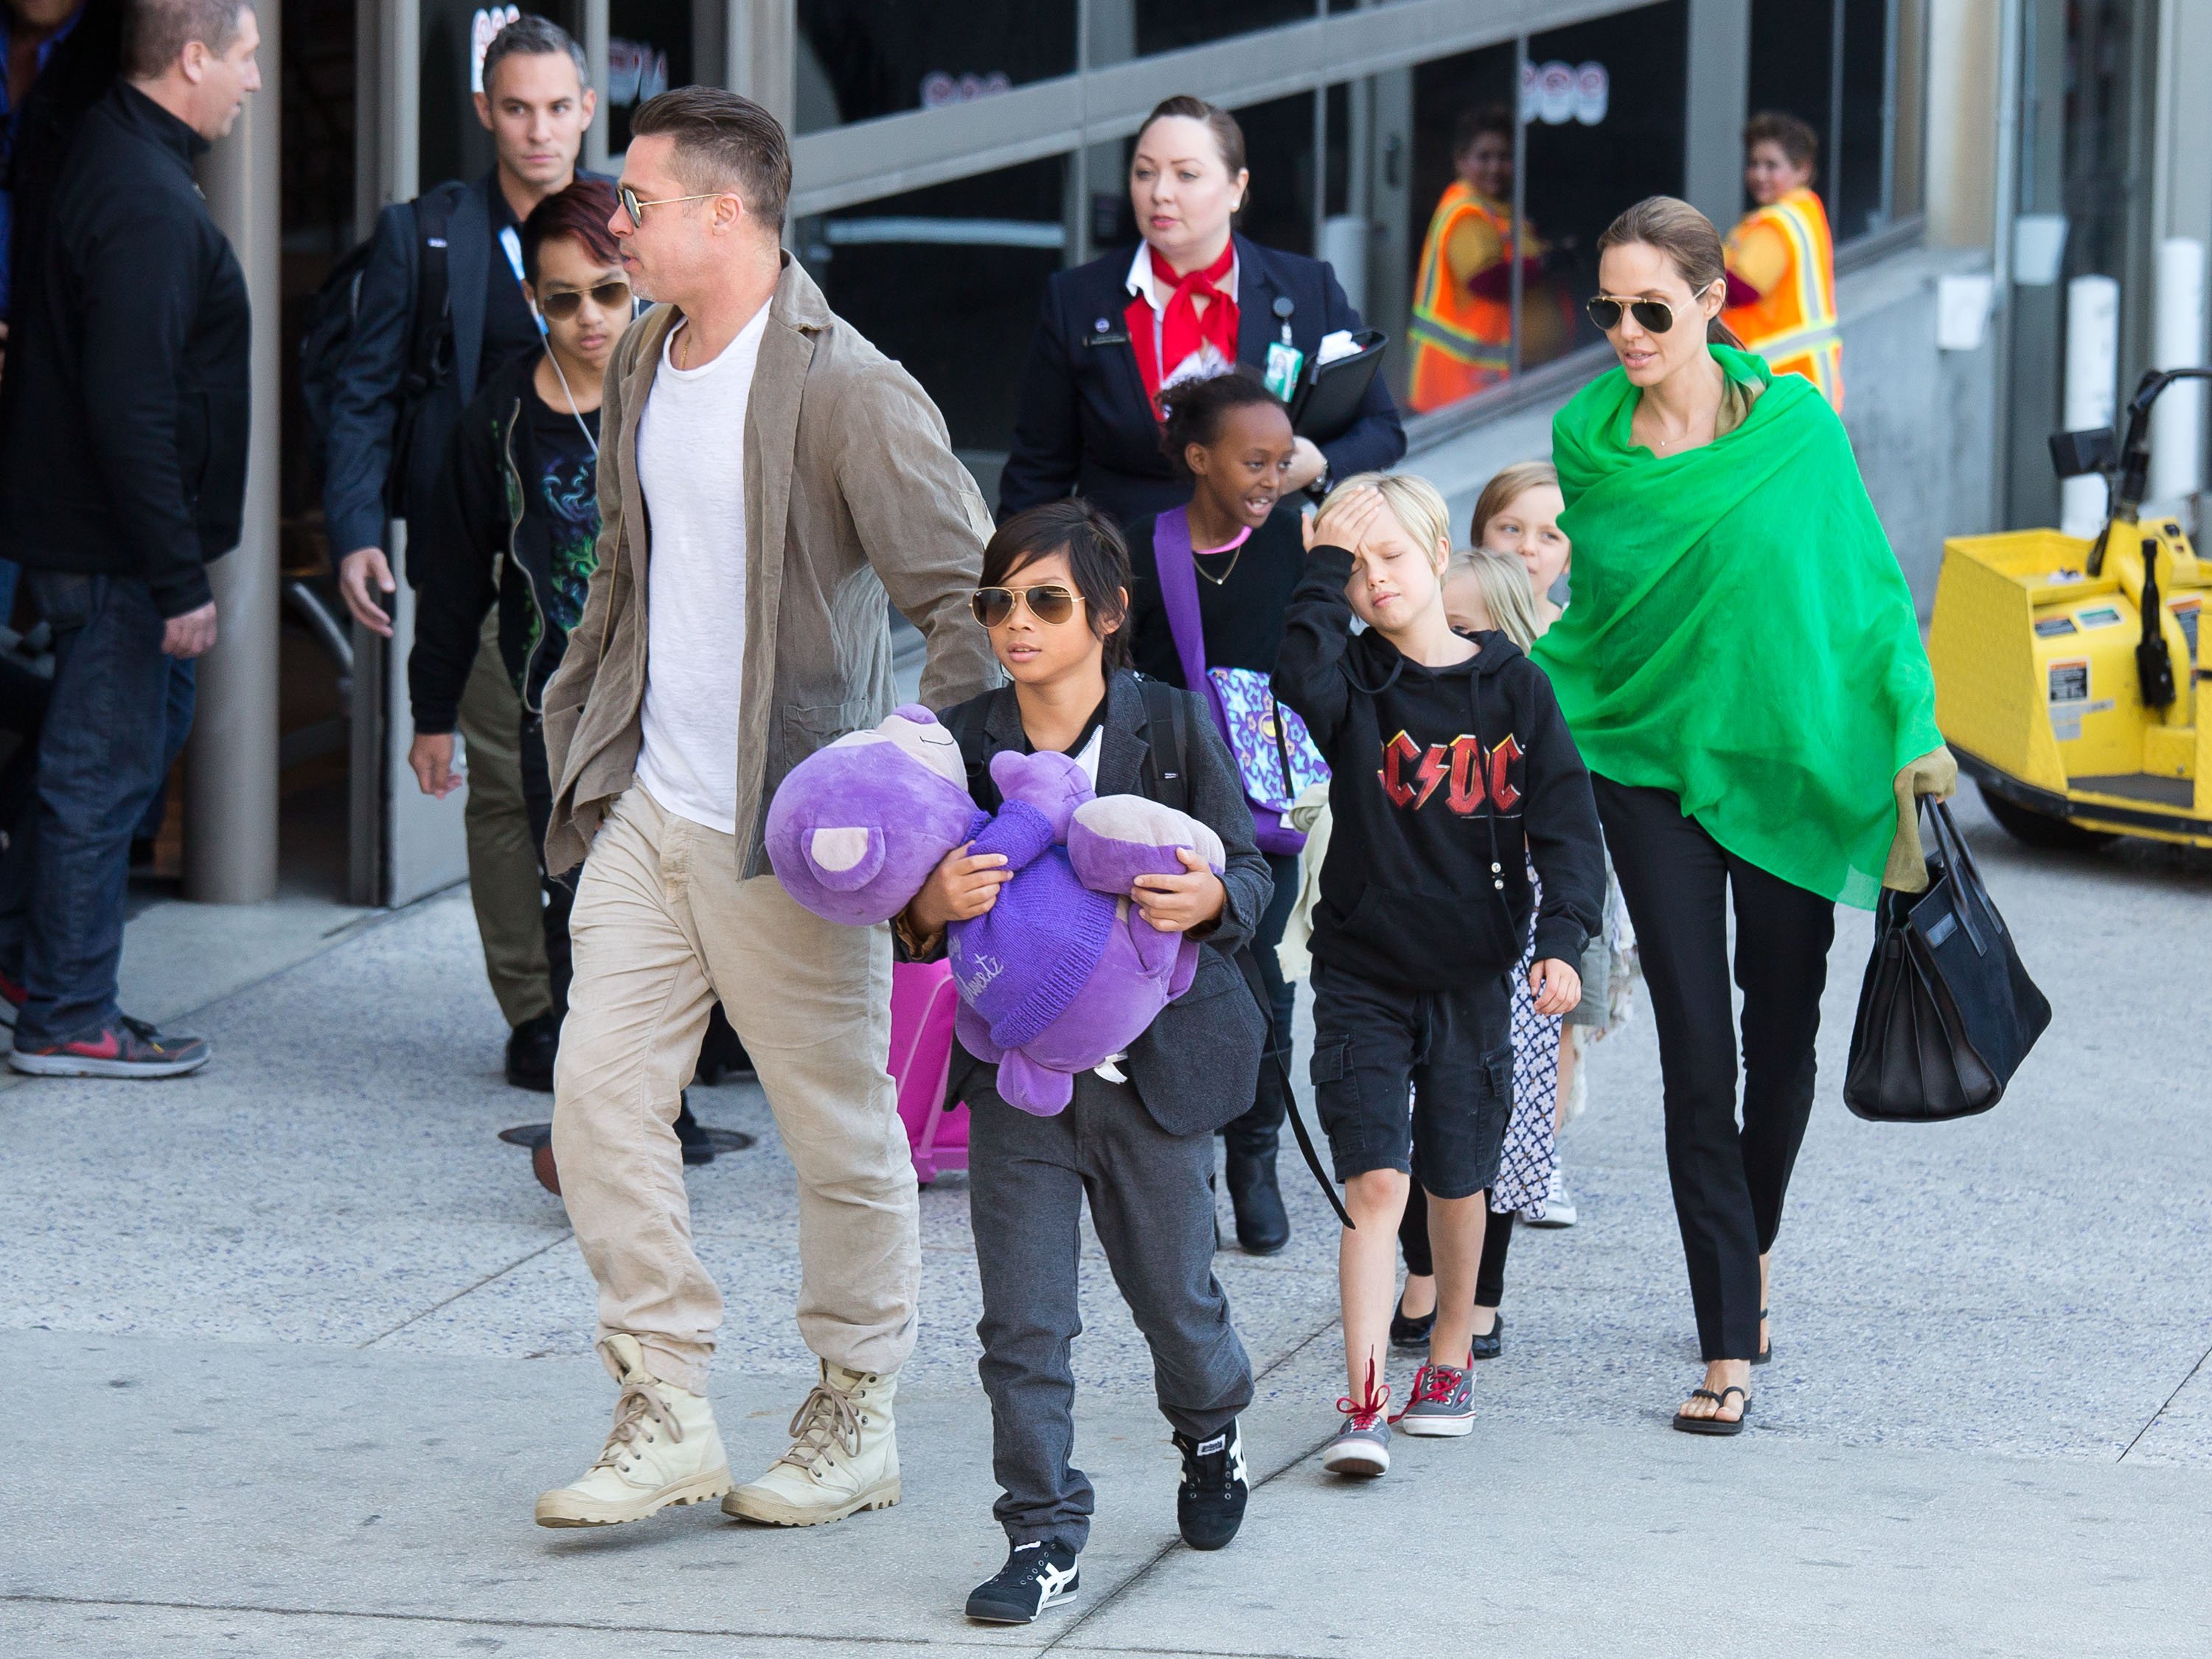 Brad Pitt et Angelina Jolie après avoir atterri à l'aéroport international de Los Angeles avec Pax, Maddox, Shiloh, Zahara, Vivienne et Knox Jolie-Pitt, le 5 février 2014, en Californie. | Source : Getty Images